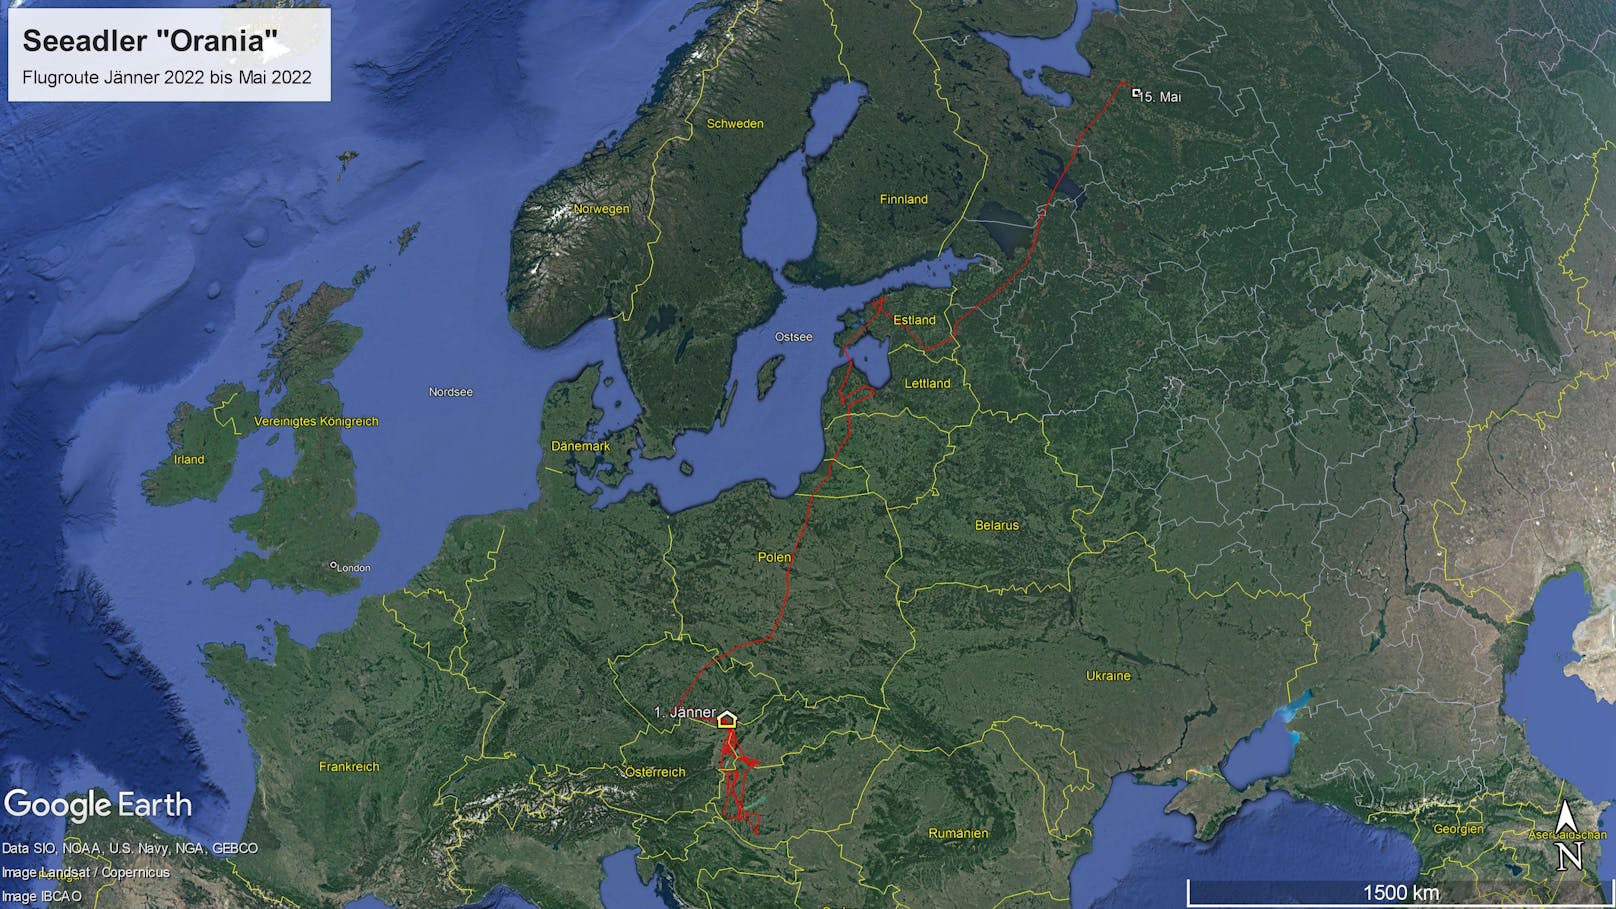 Von den Donau-Auen flog "Orania" bis nach Russland - ein absoluter Rekord. 